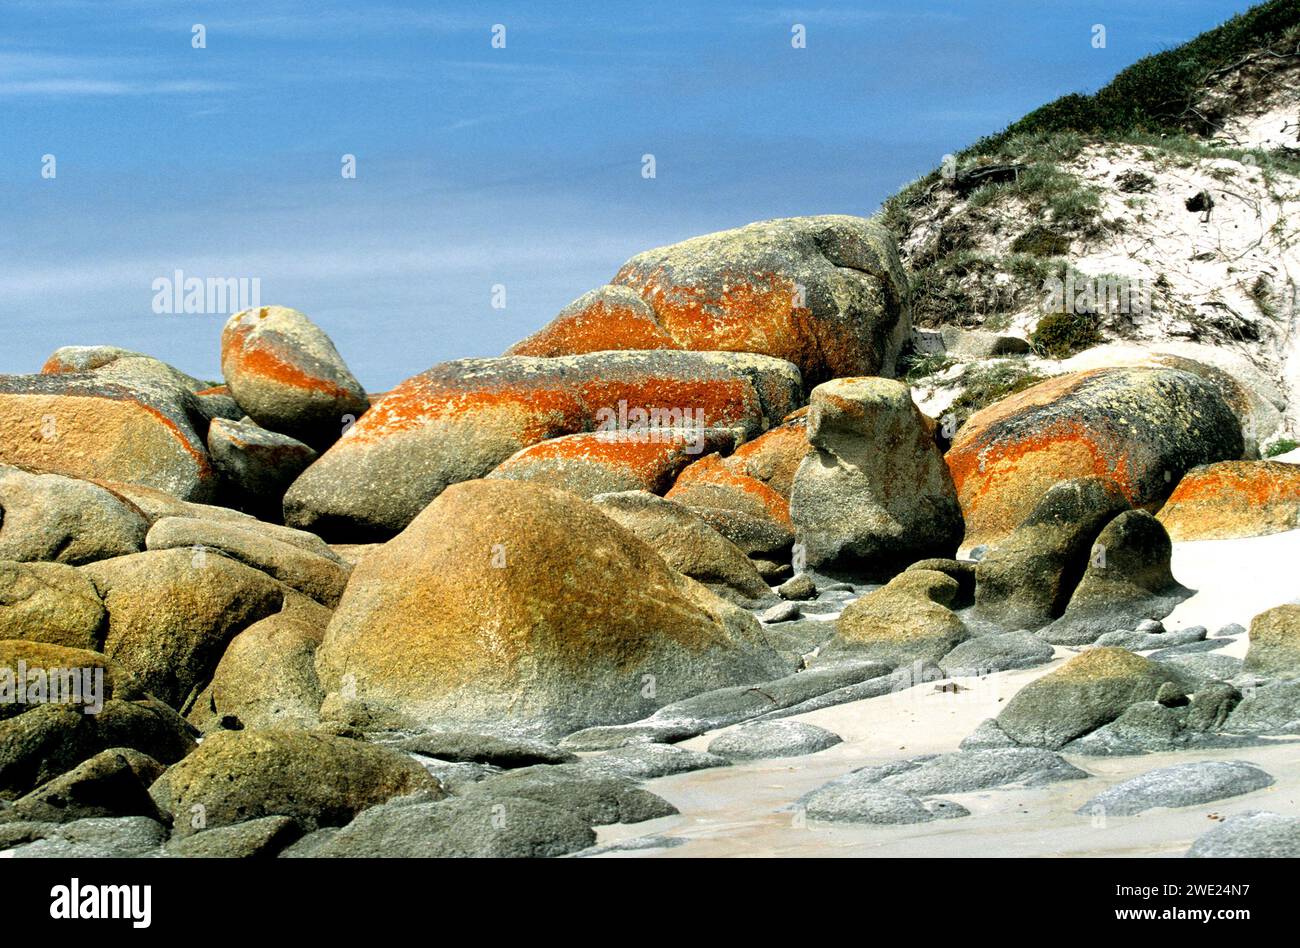 Coastal rock & stone formations covered in Lichen, Tasmania, Australia Stock Photo